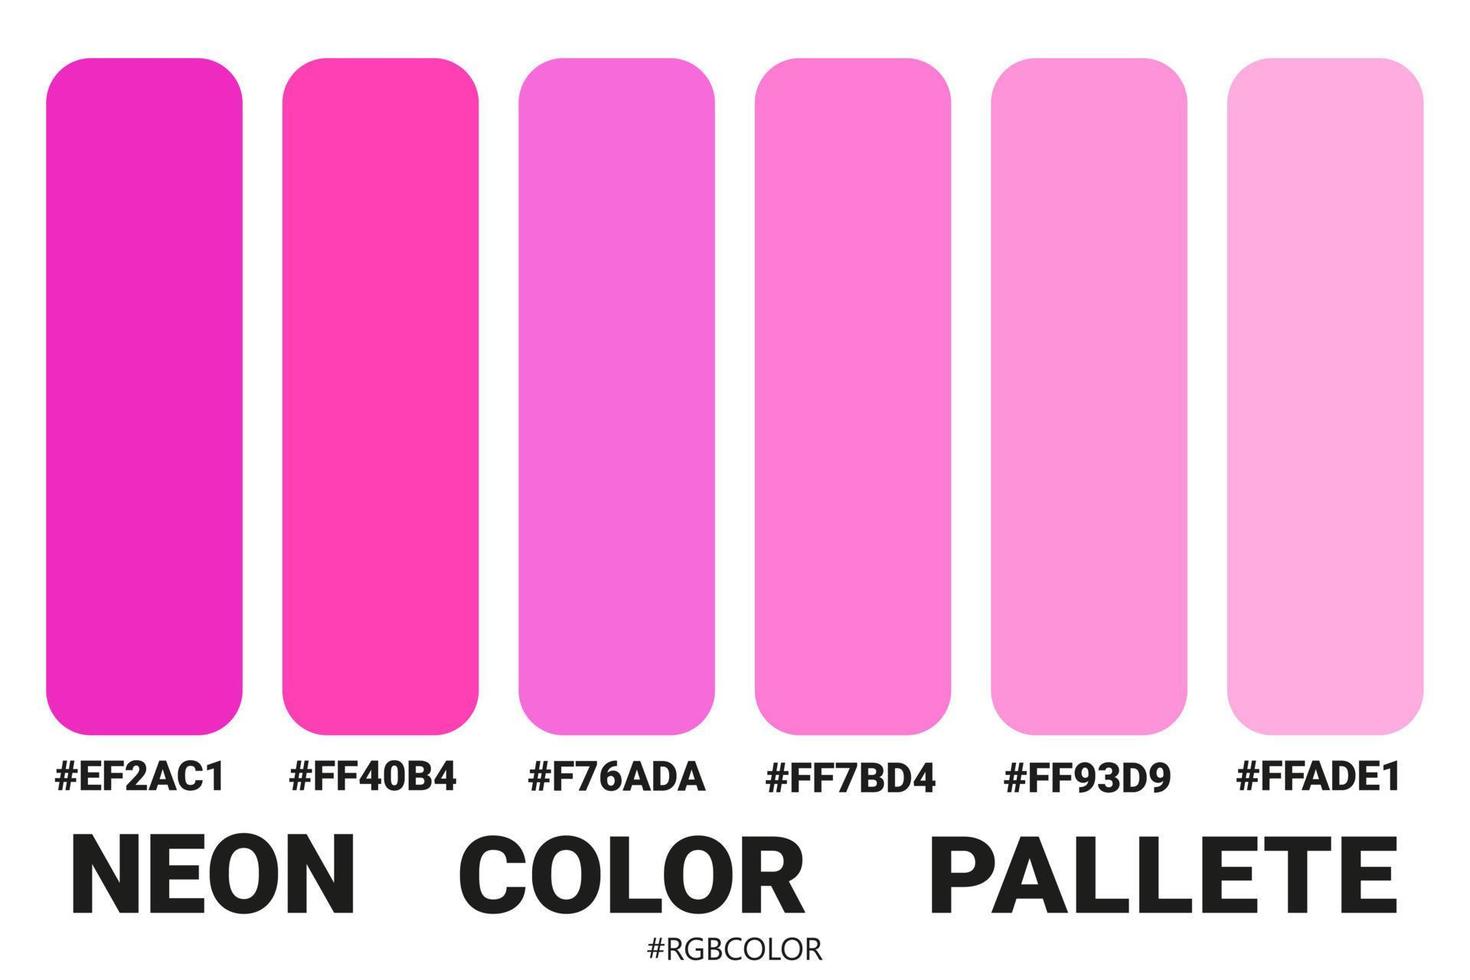 une collection de palettes de couleurs précises avec des codes, parfaites pour être utilisées par les illustrateurs vecteur